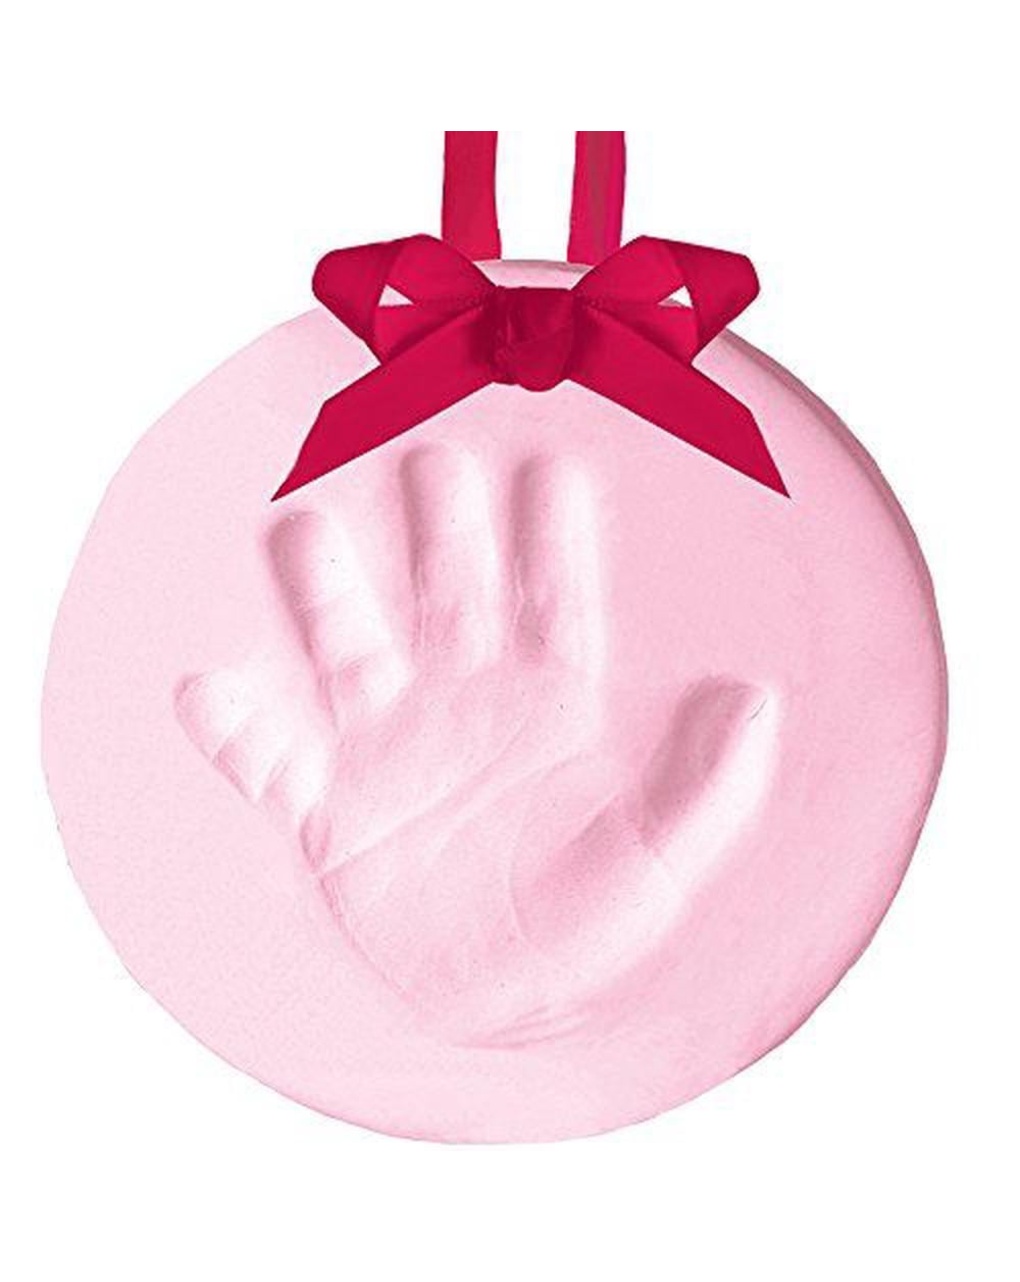 Babyprints keepsake pink